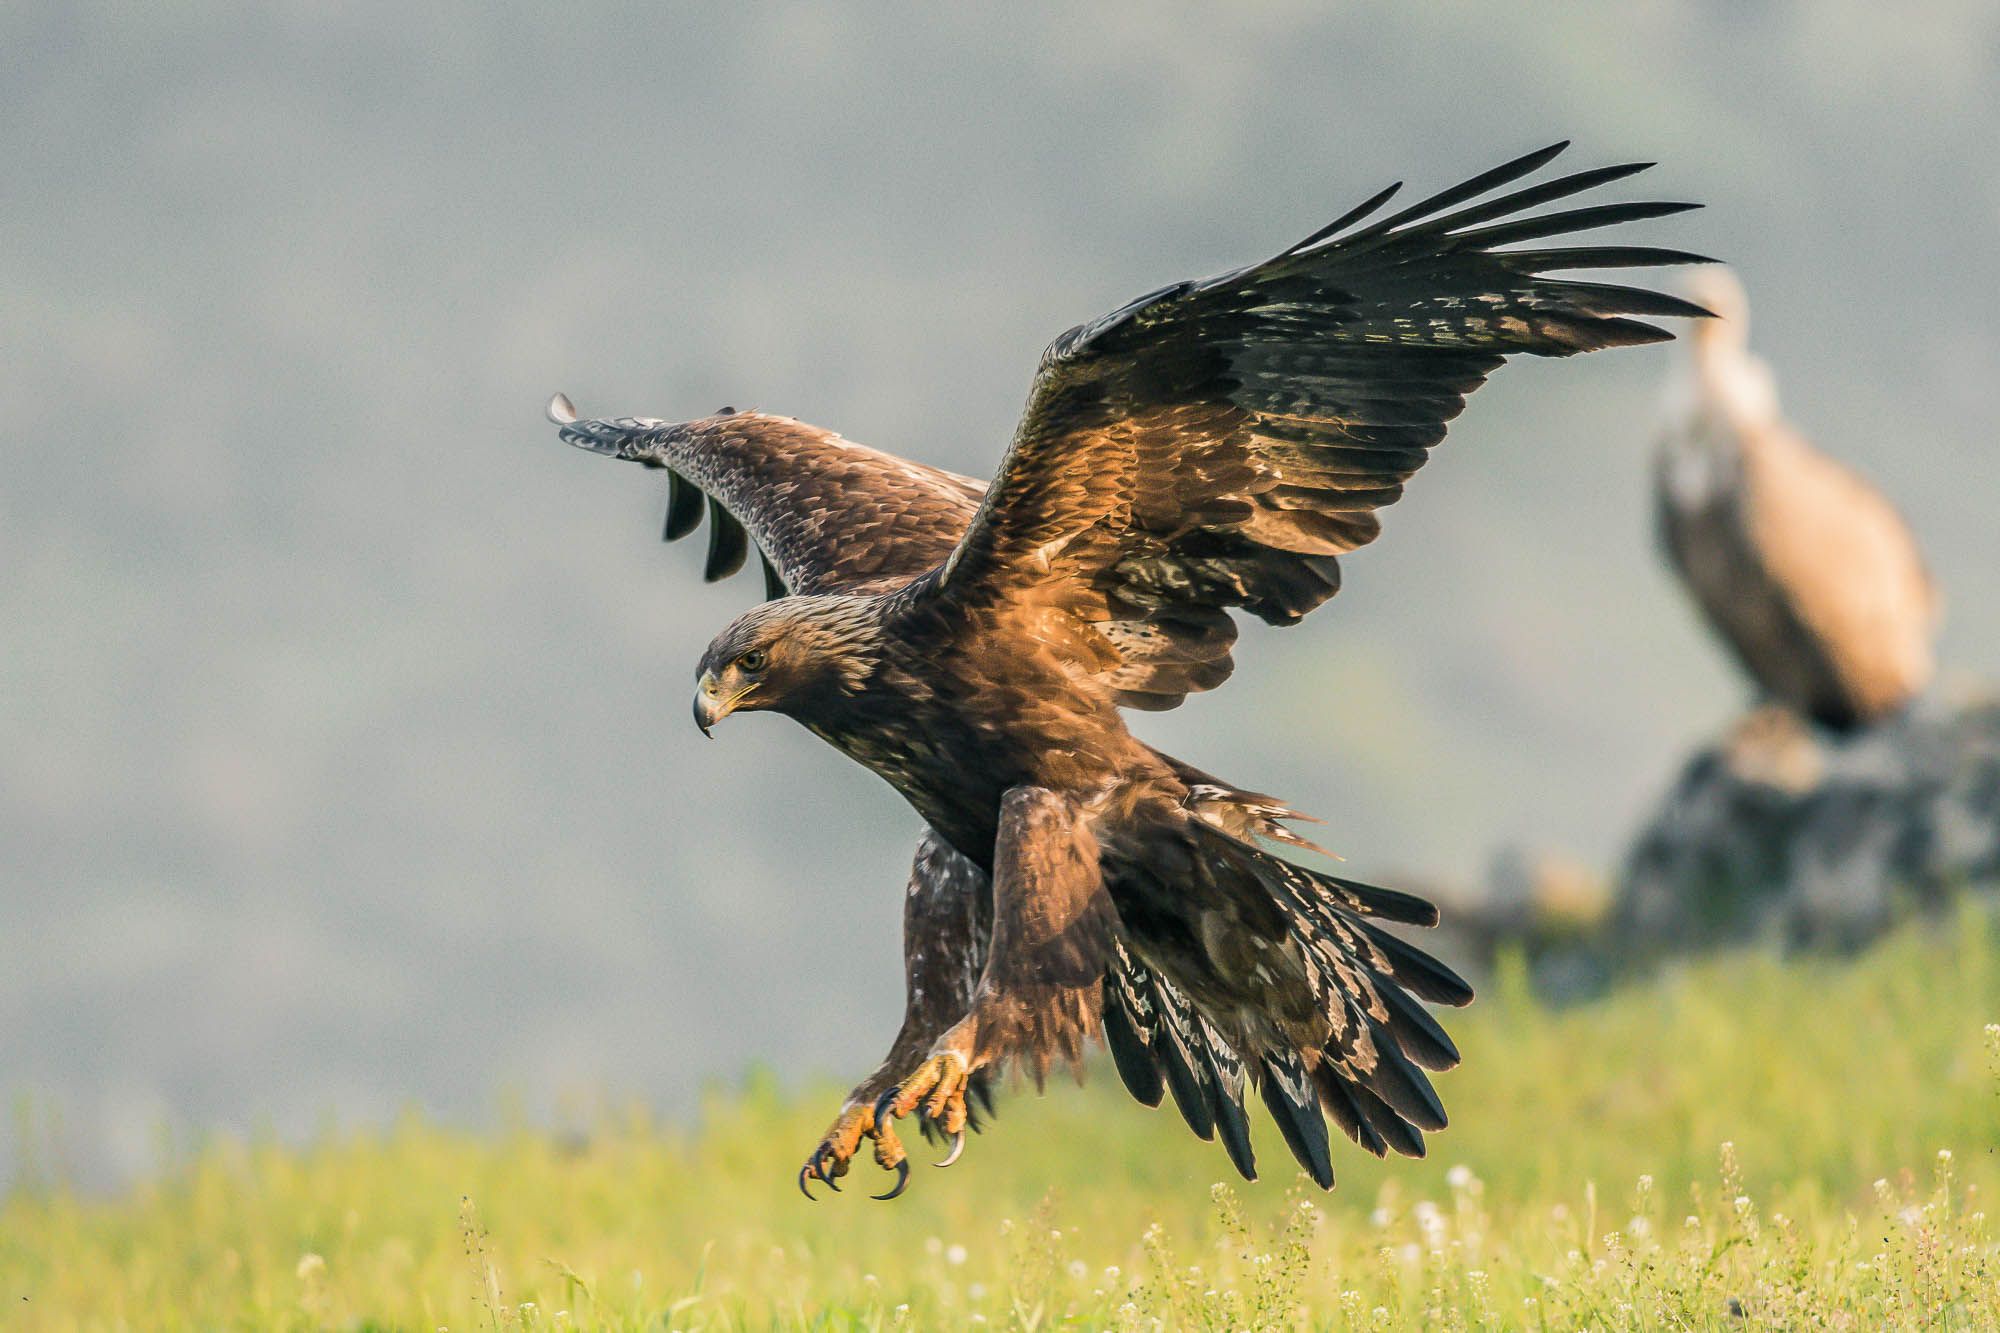 #mountain #wildlife #vulture #spring #bird #portrait #animal #eagle #nature, Nikolay Nikolov